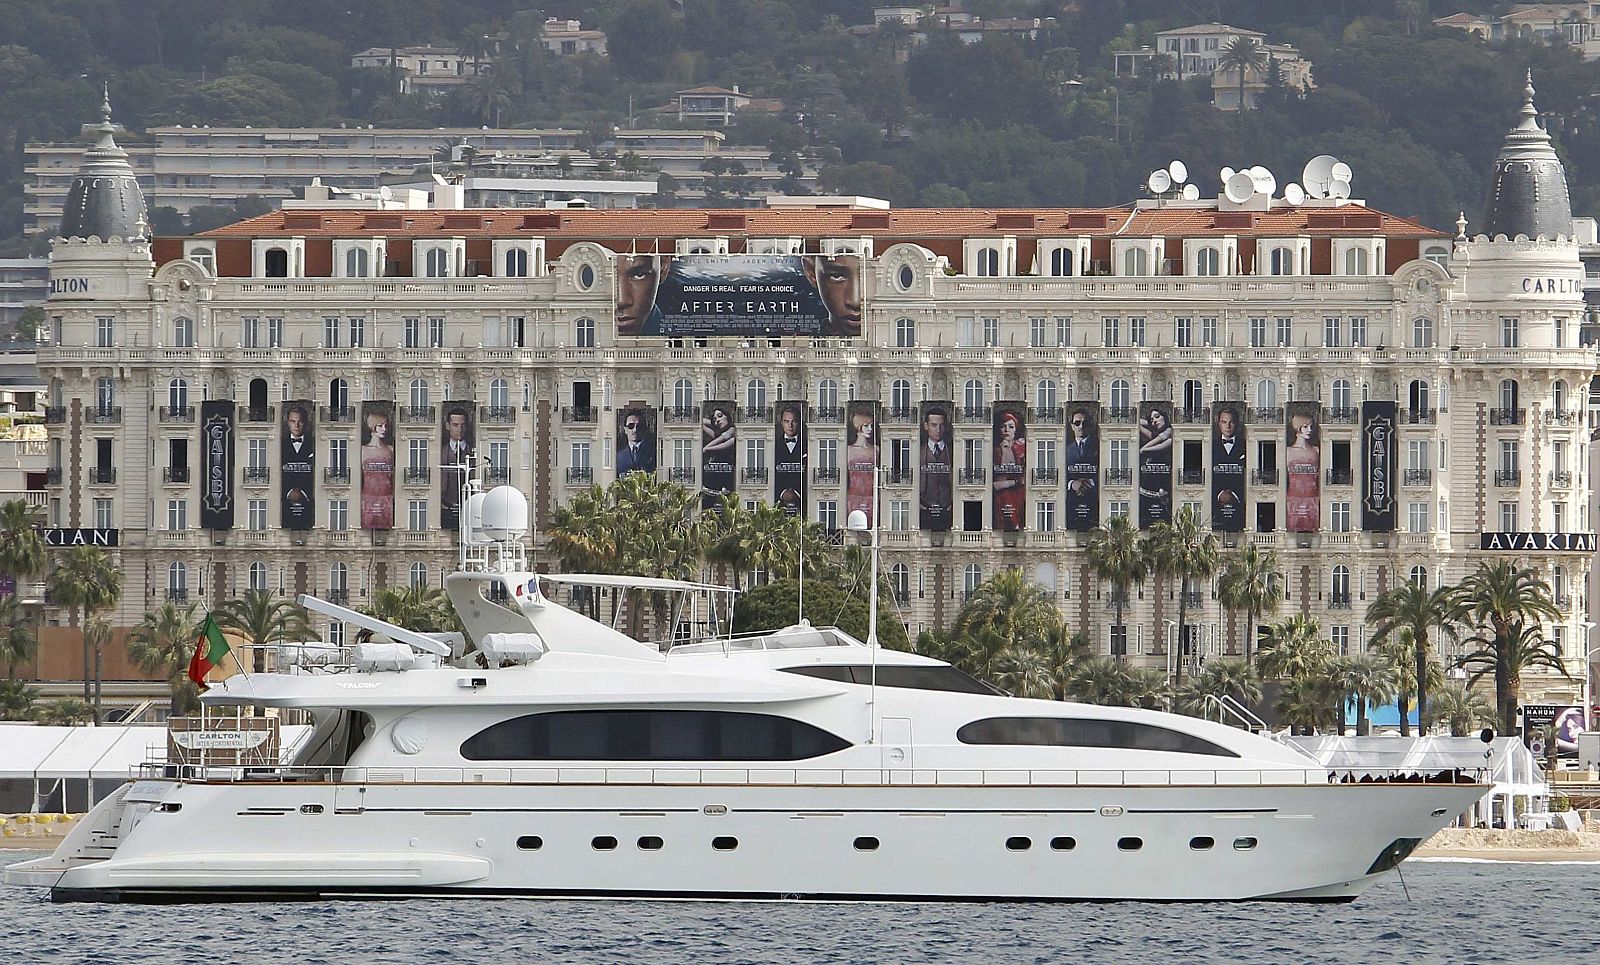 Foto de archivo del hotel Carlton en Cannes.